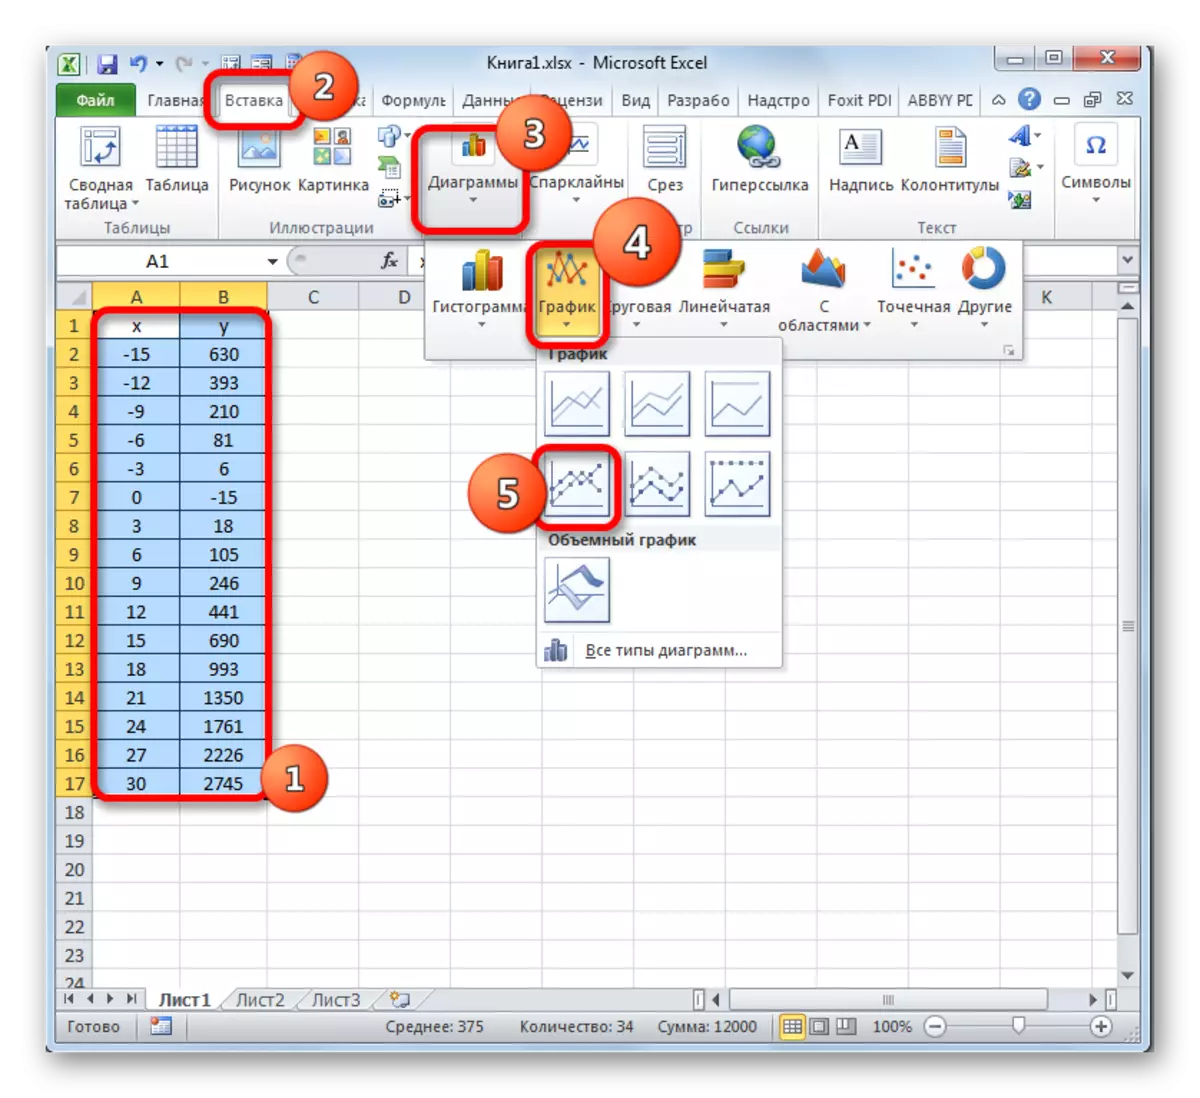 Гузариш ба сохтмони график бо нишондиҳандаҳо дар Microsoft Excel